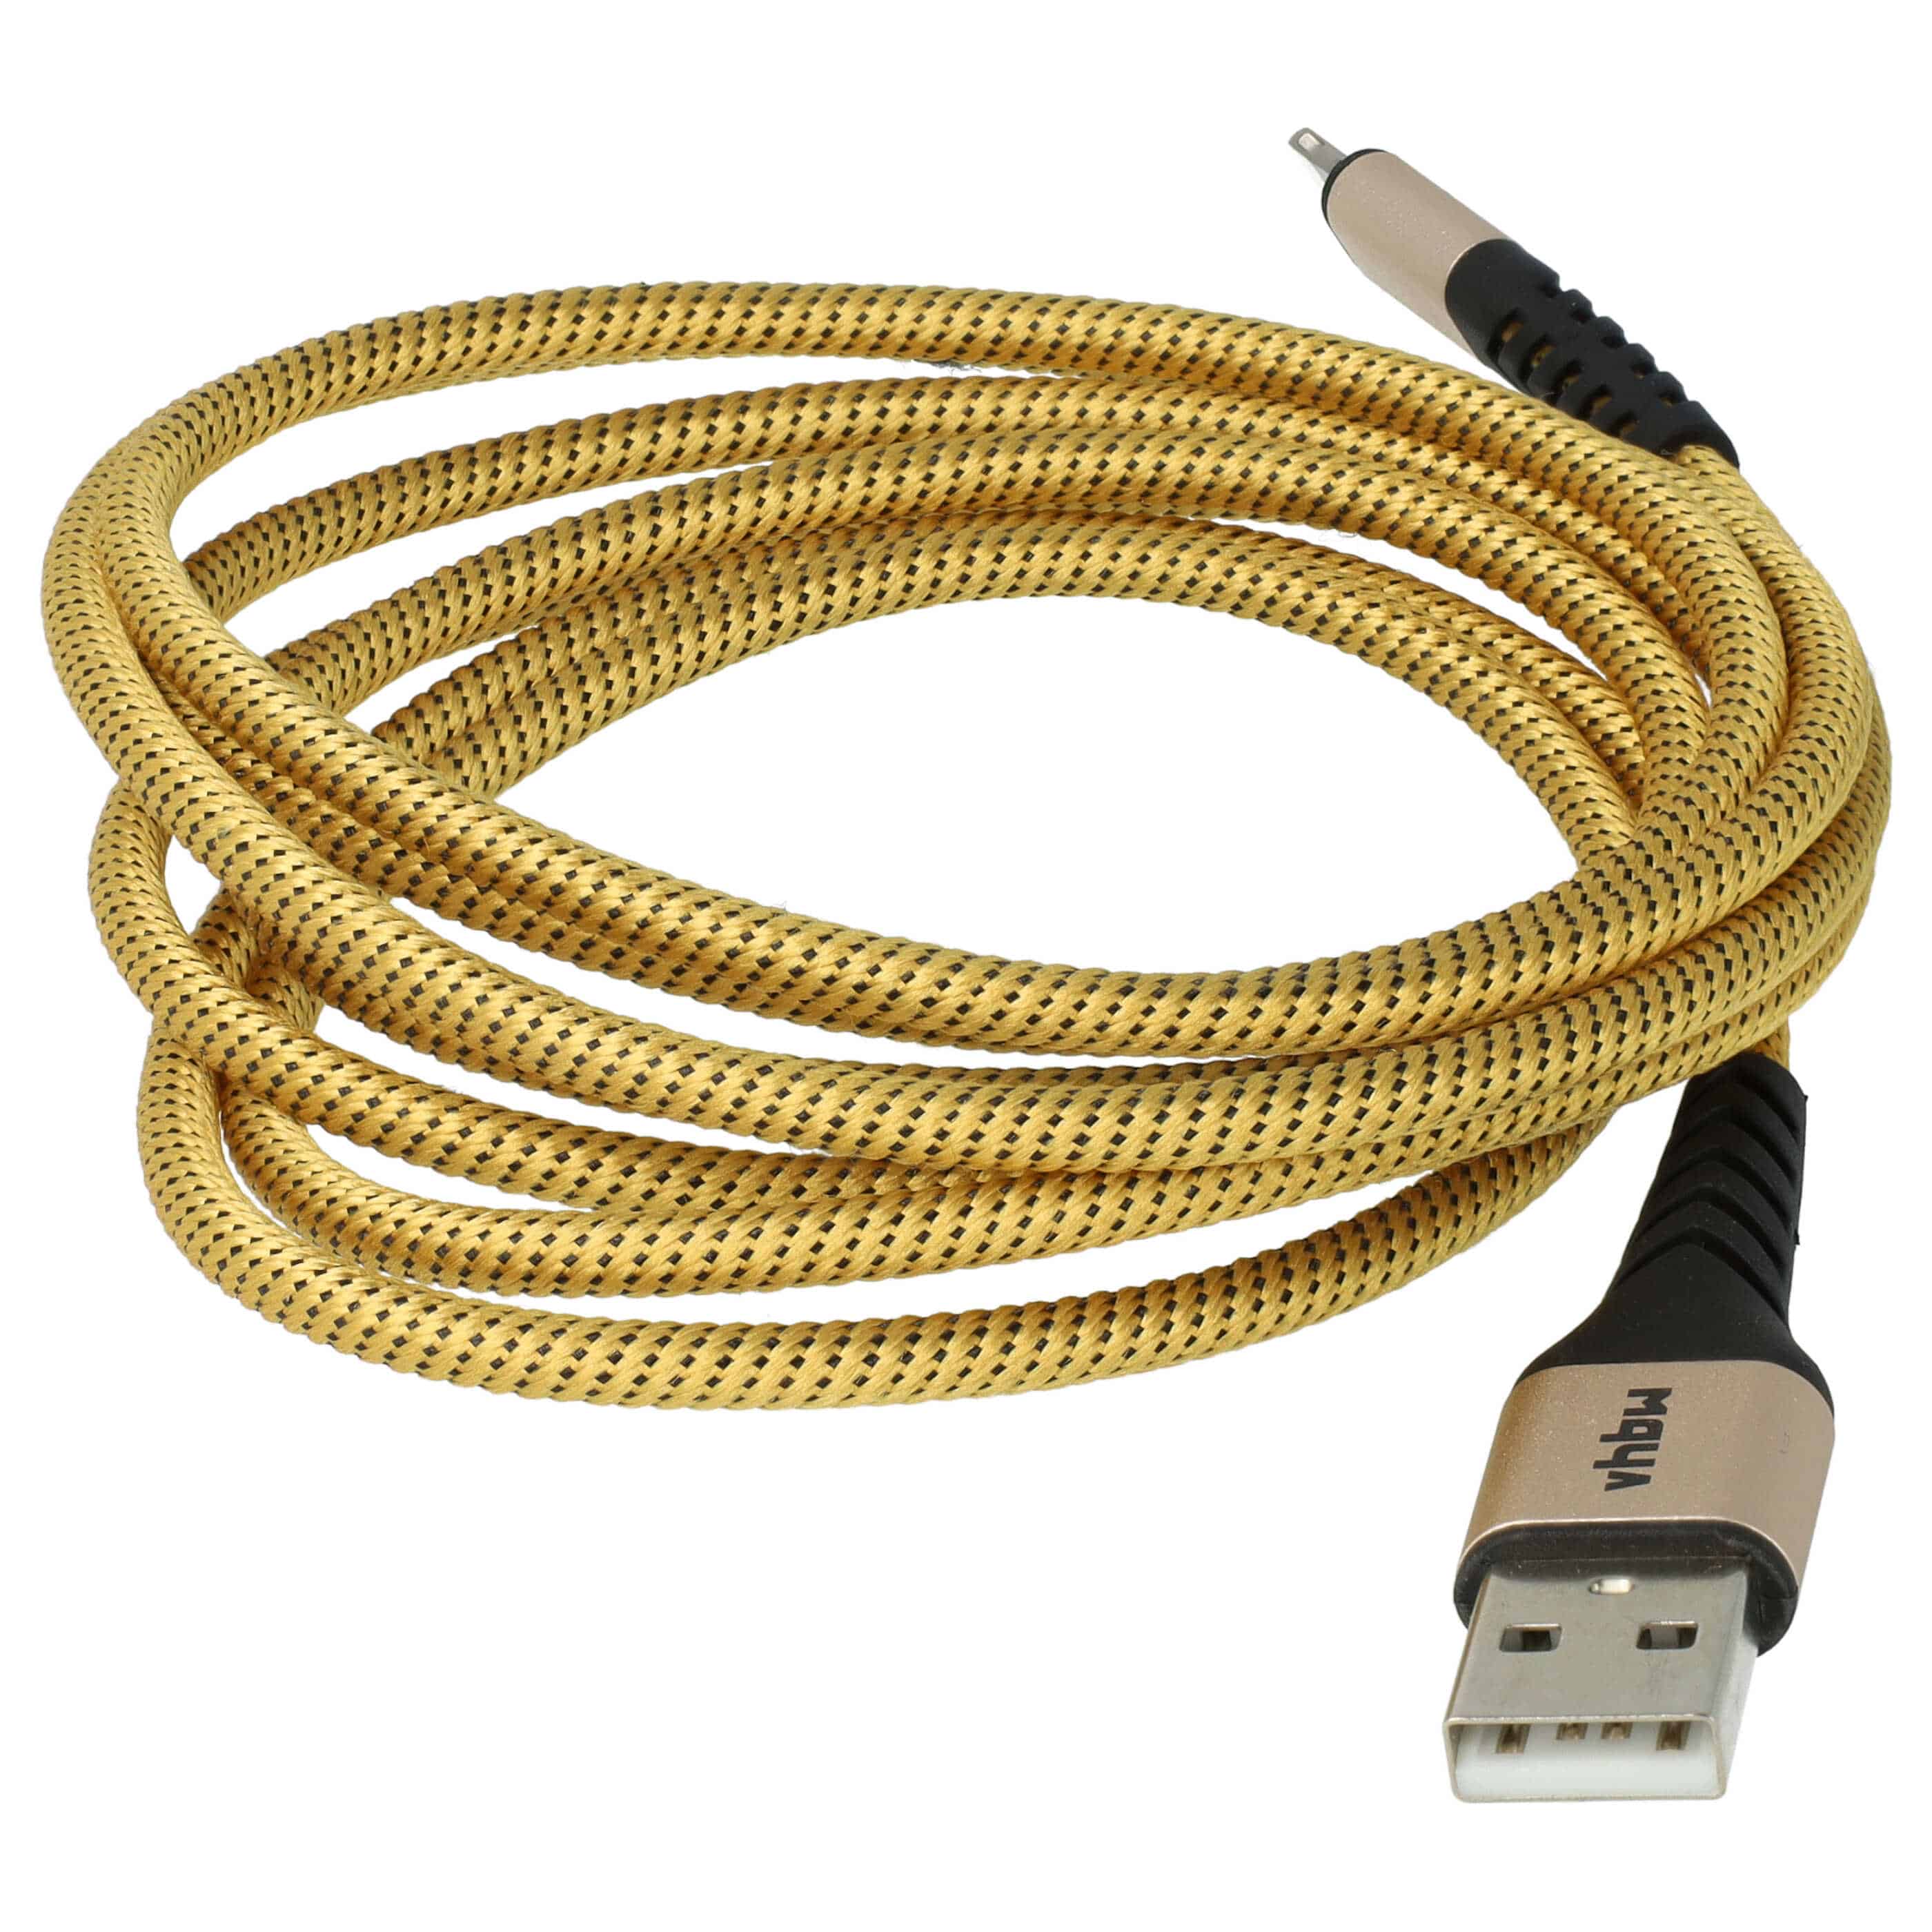 2x Cable lightning a USB A para dispositivos Apple iOS Apple AirPods - negro / amarillo, 180 cm